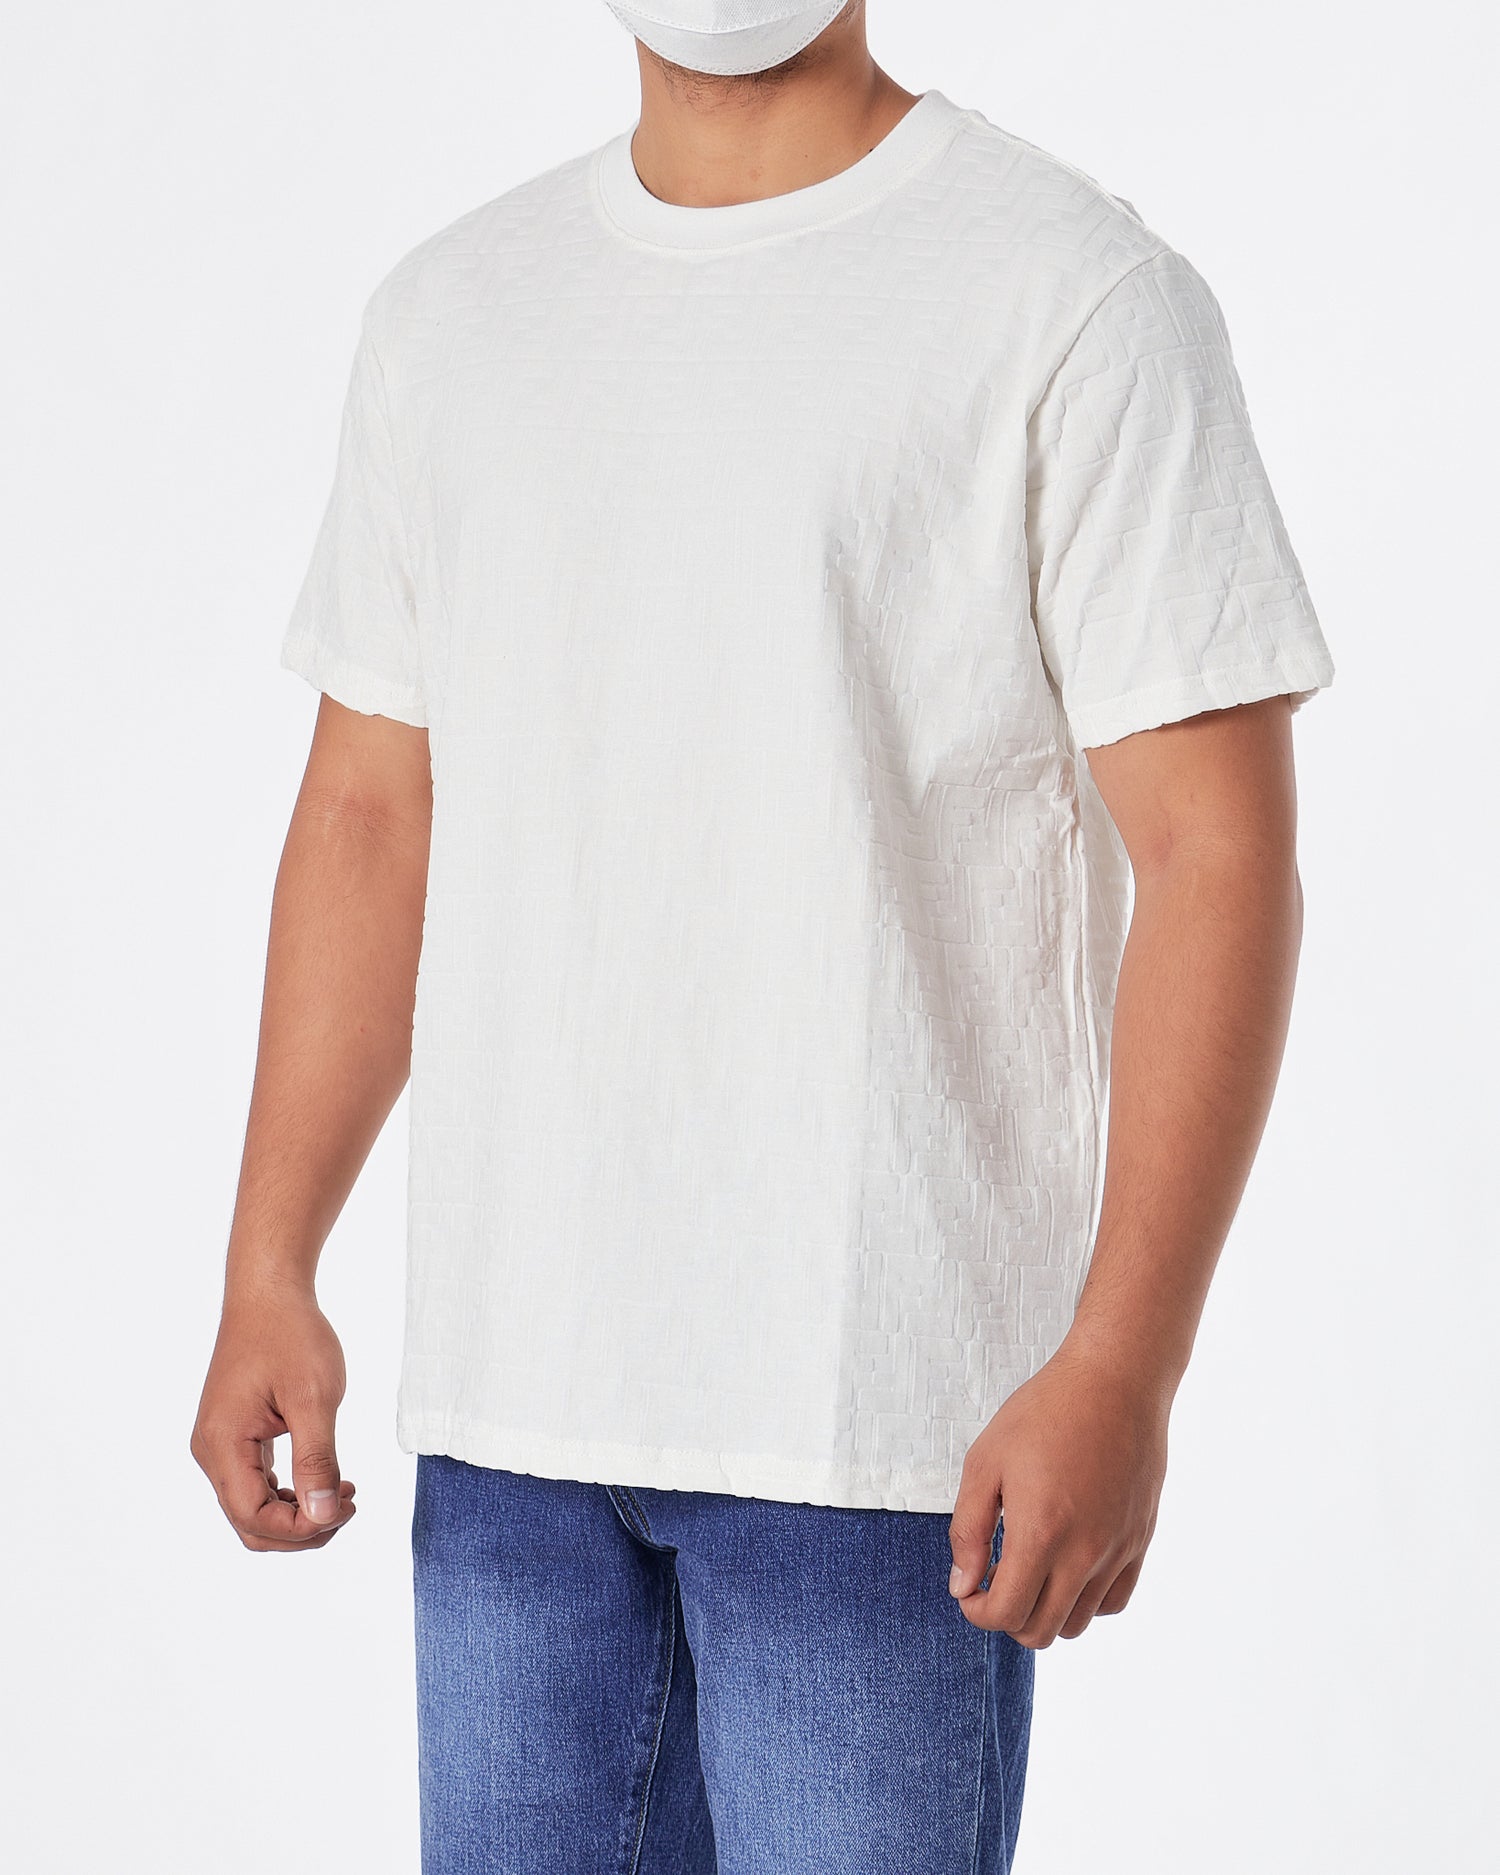 FEN Monogram Over Printed Men White  T-Shirt 22.90